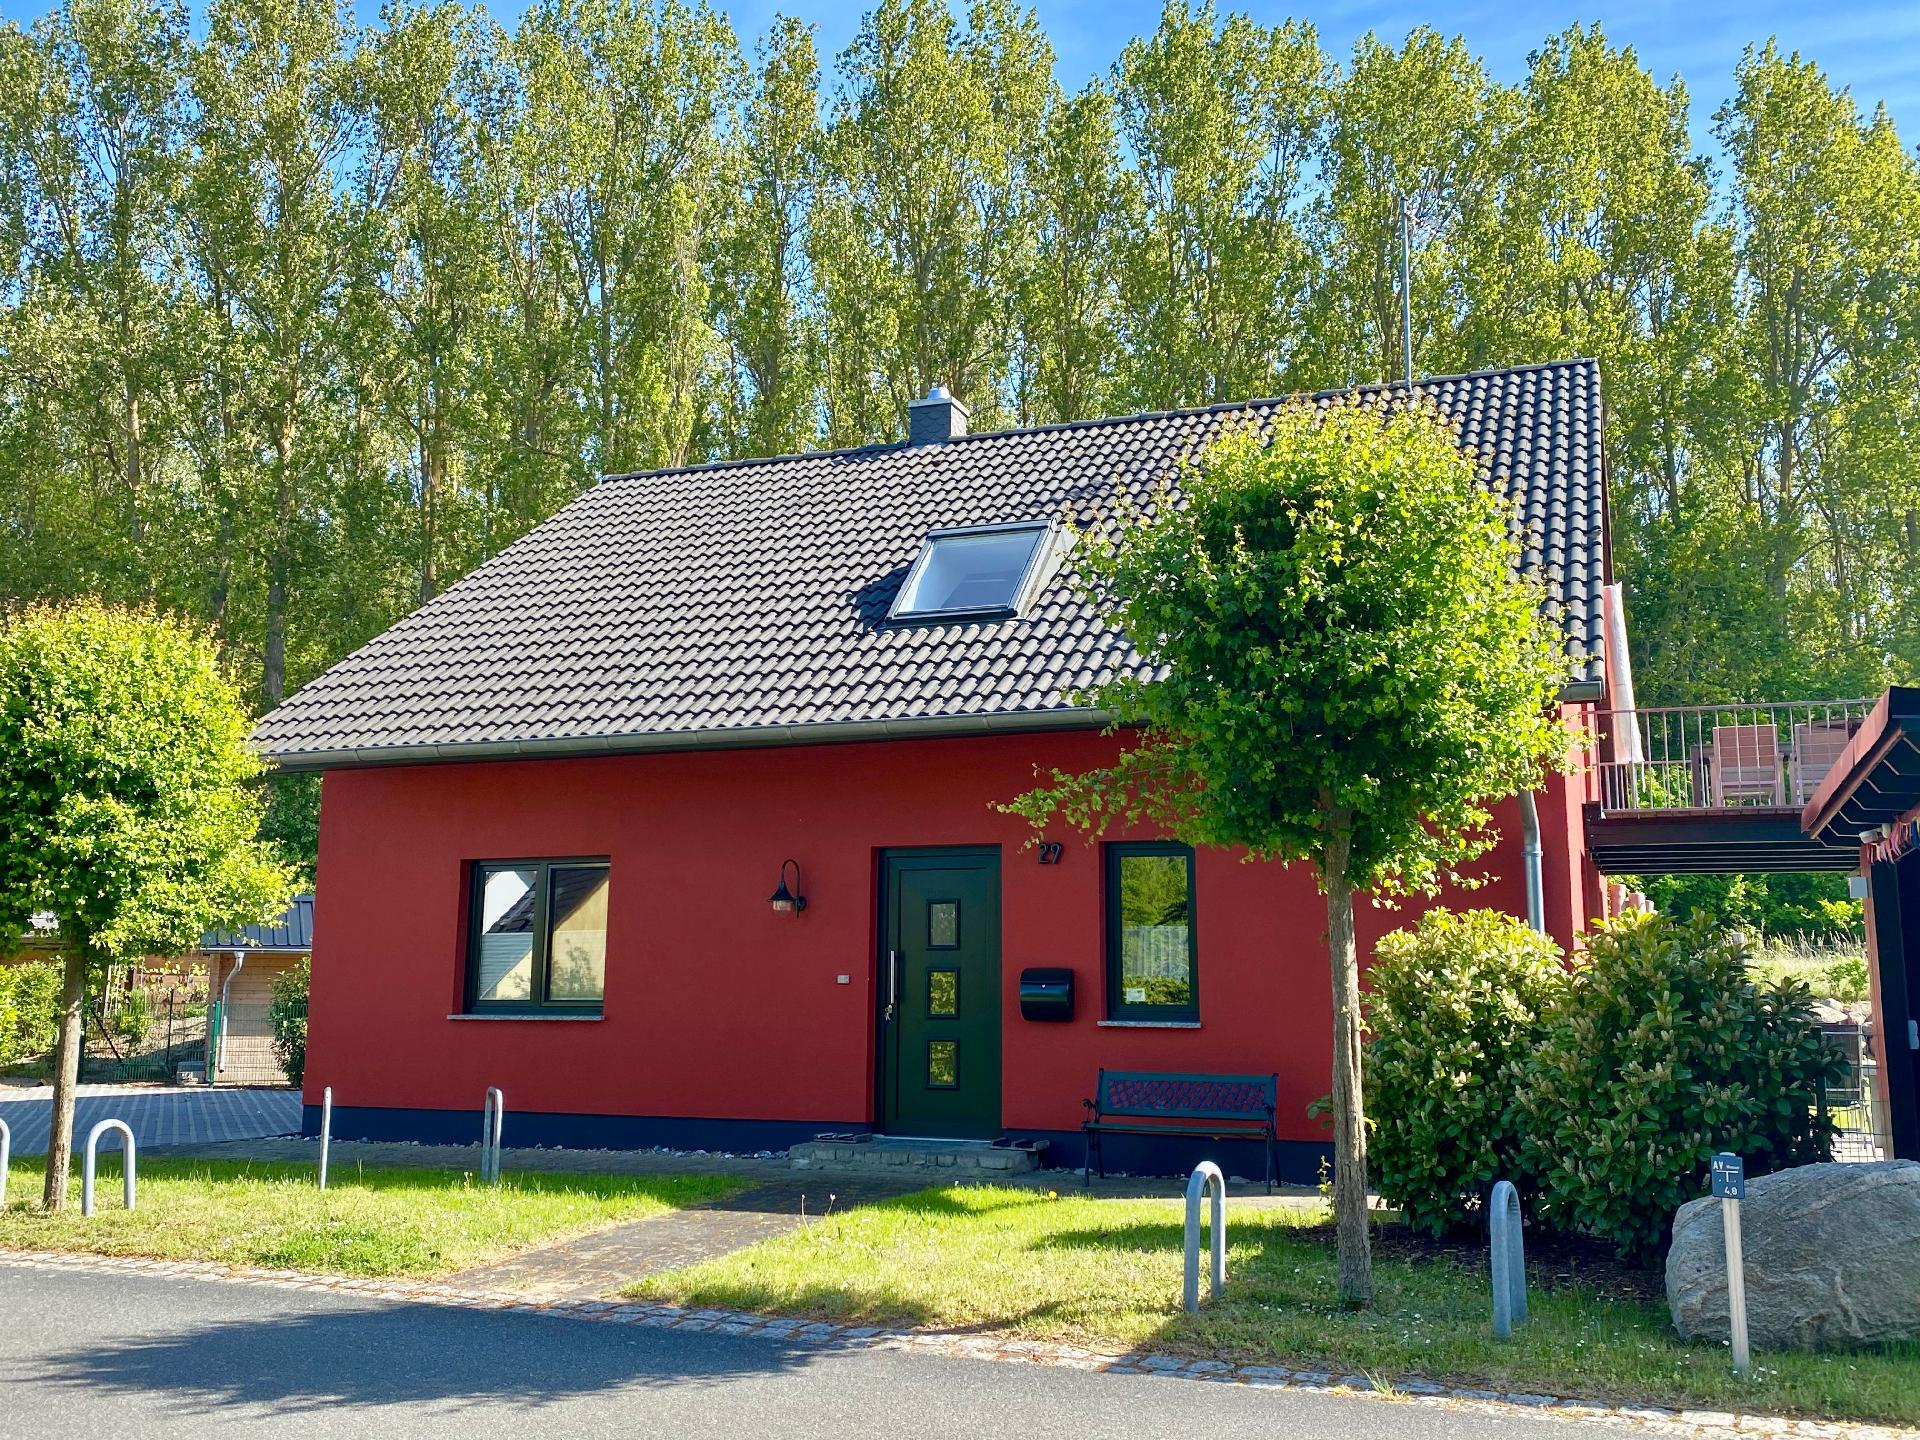 Ferienwohnung für 4 Personen ca. 80 m² i Ferienhaus in Mecklenburg Vorpommern